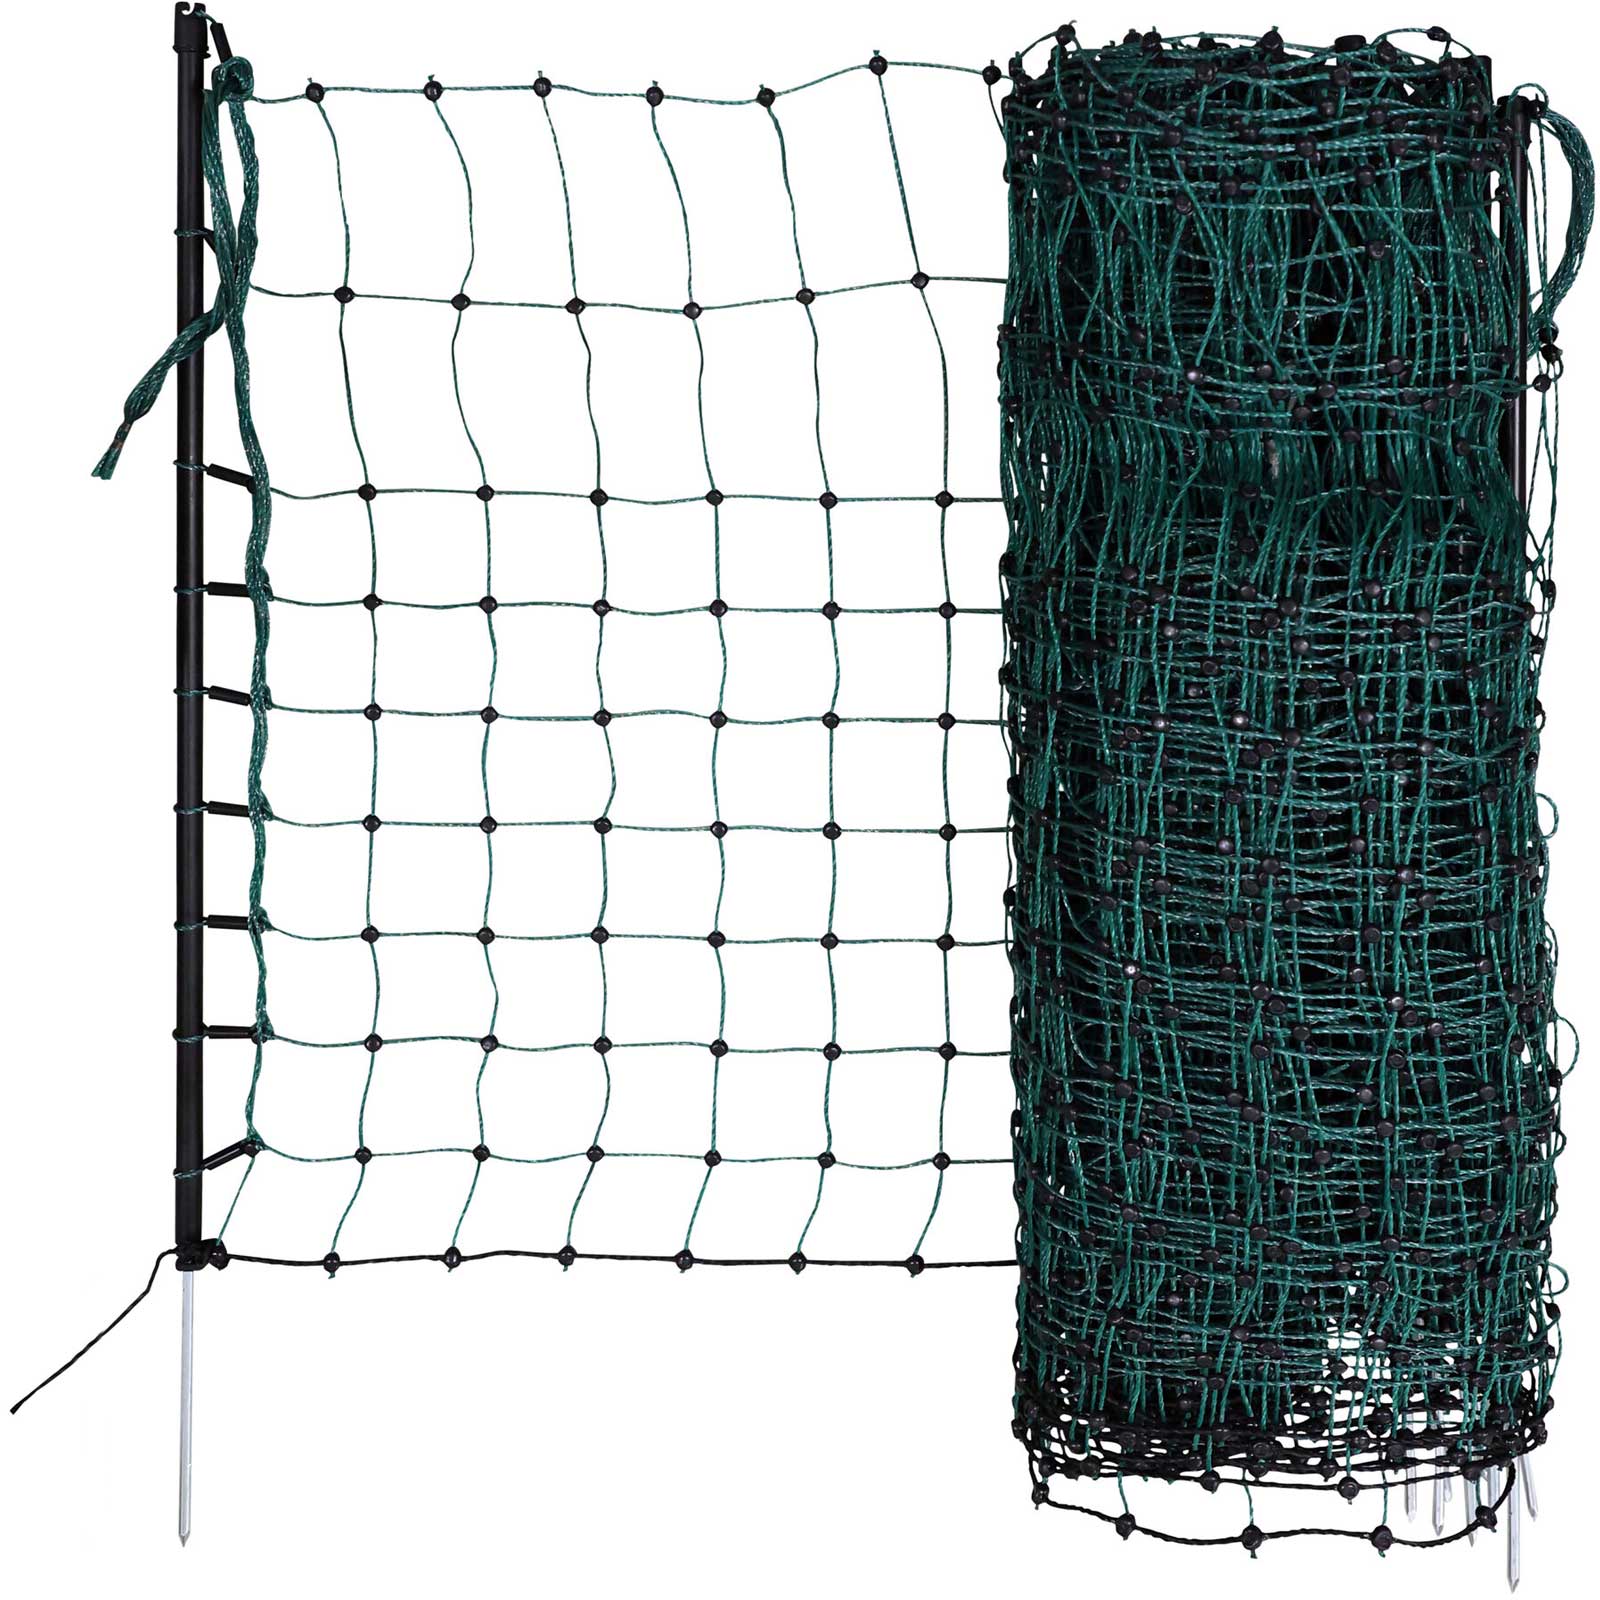 Kaninchennetz, Einzelspitze, grün 12 m x 65 cm